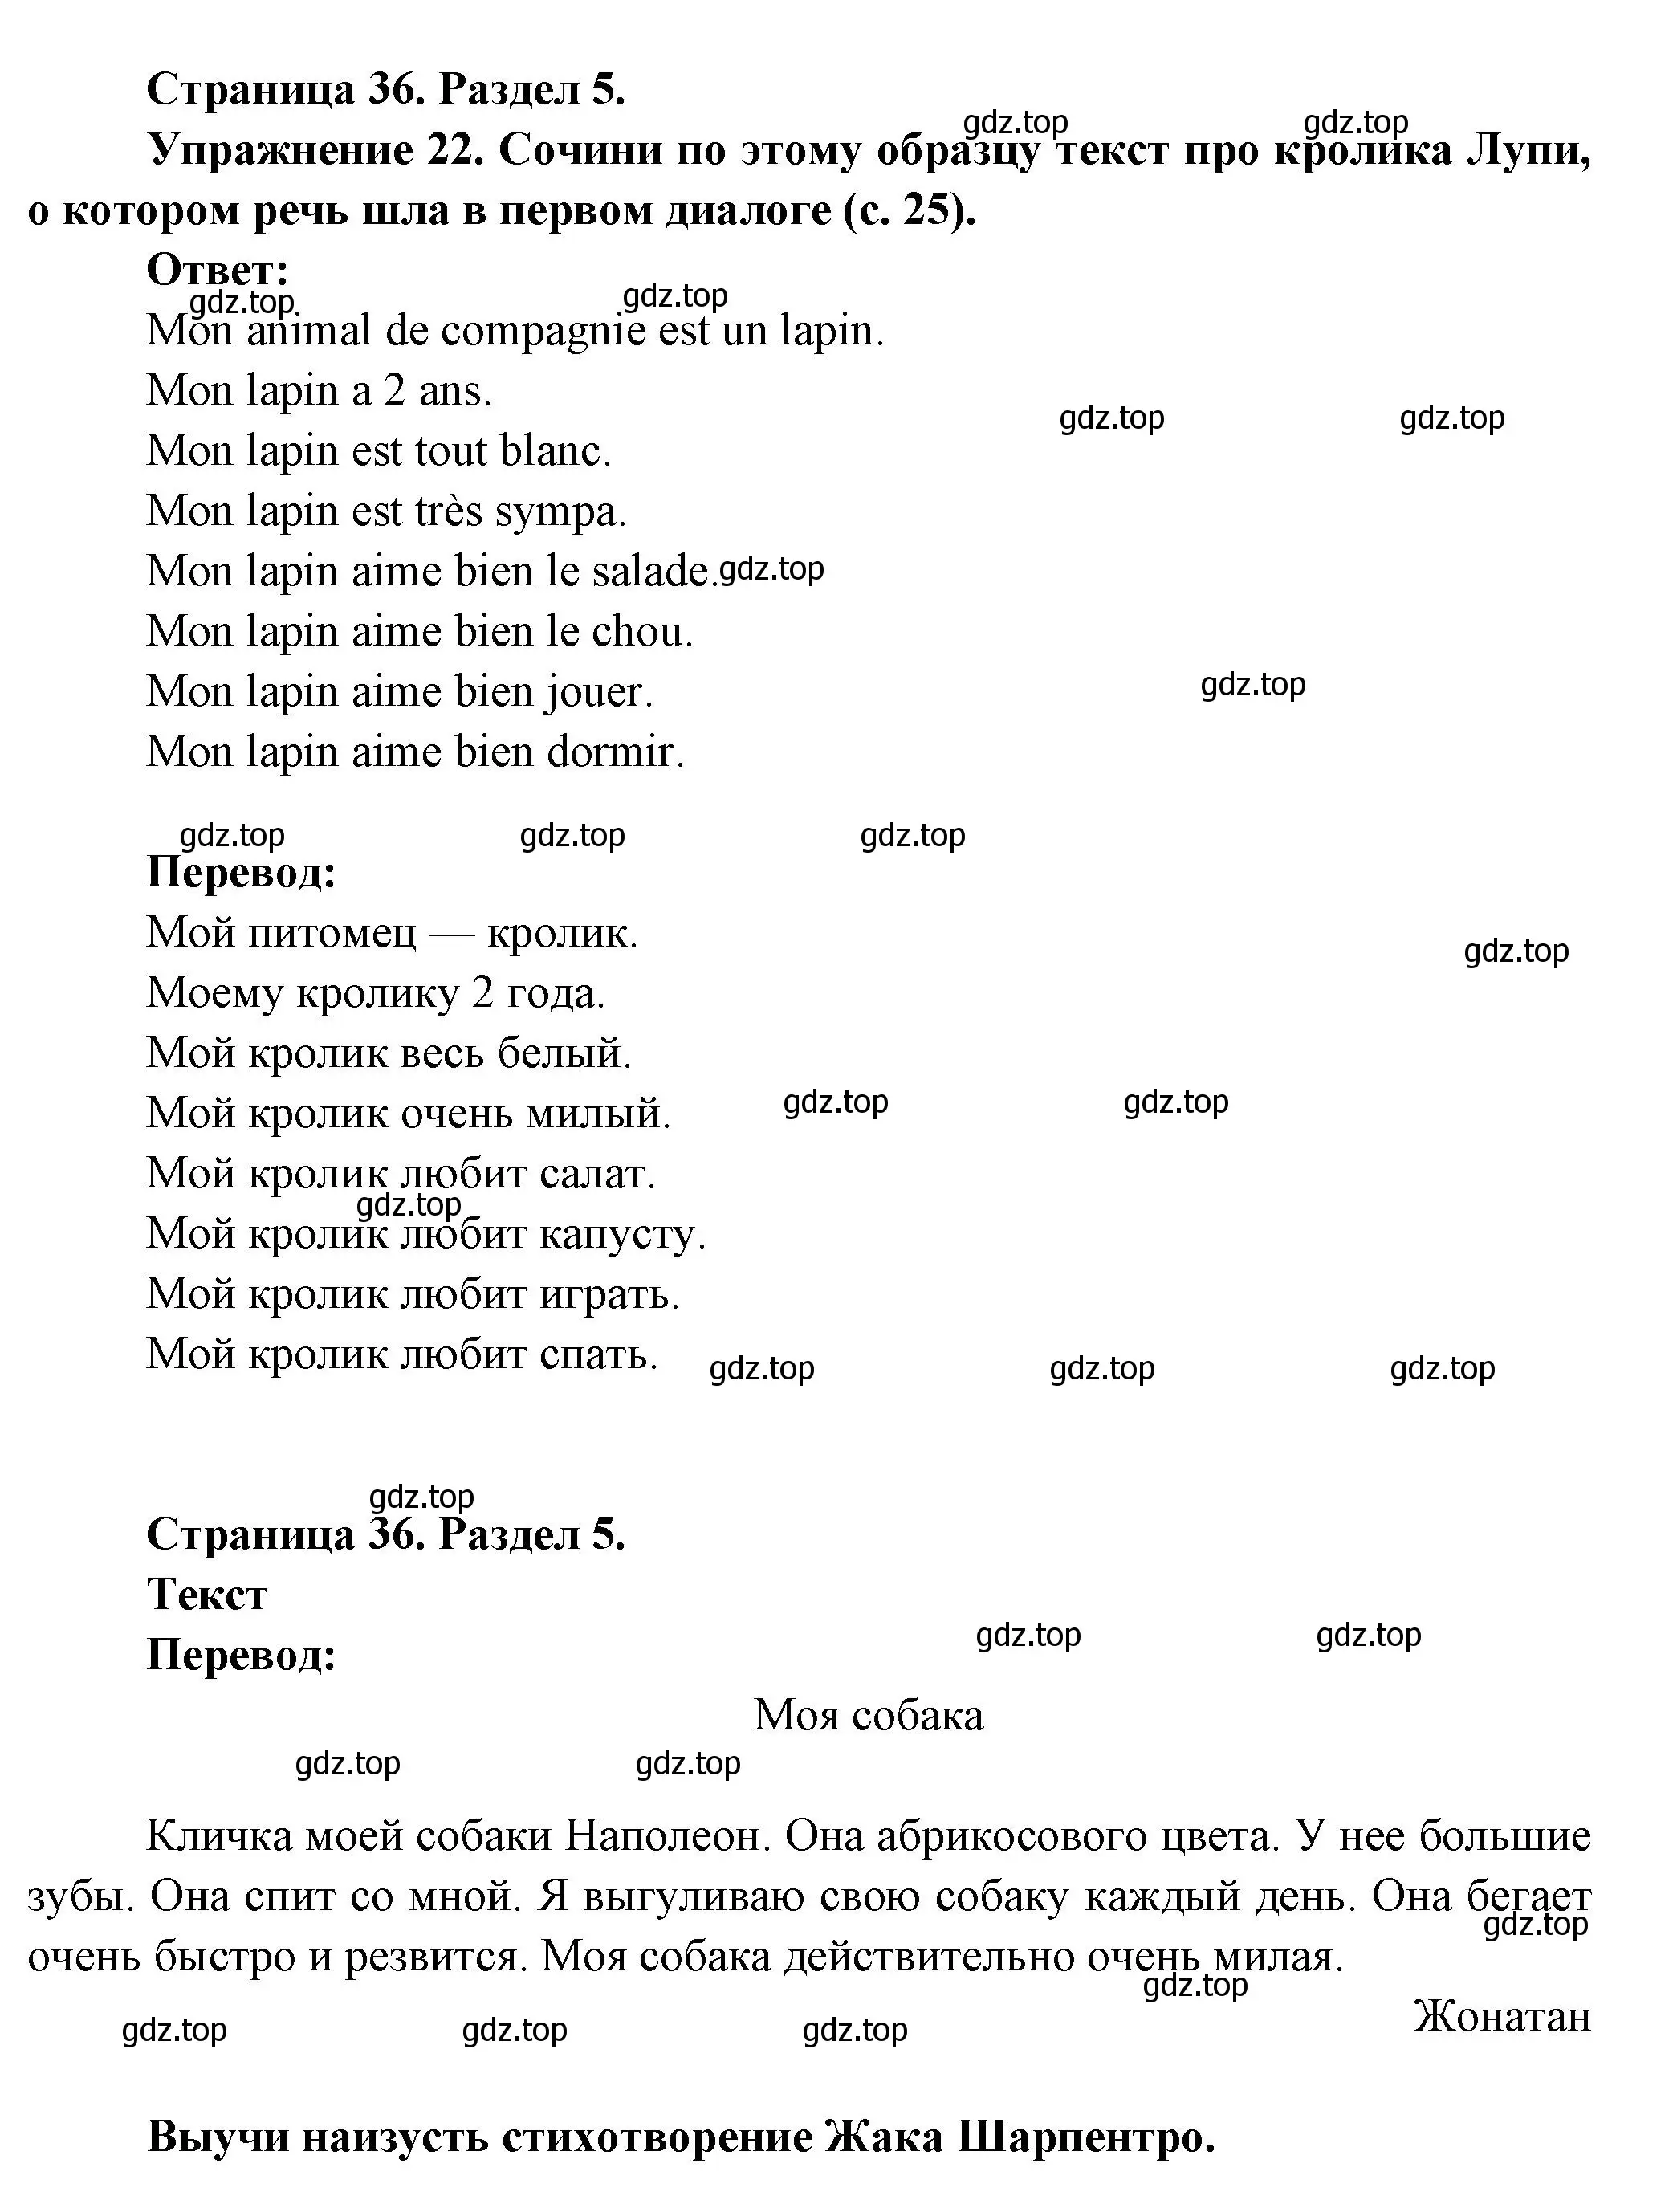 Решение номер 22 (страница 36) гдз по французскому языку 5 класс Береговская, Белосельская, учебник 2 часть